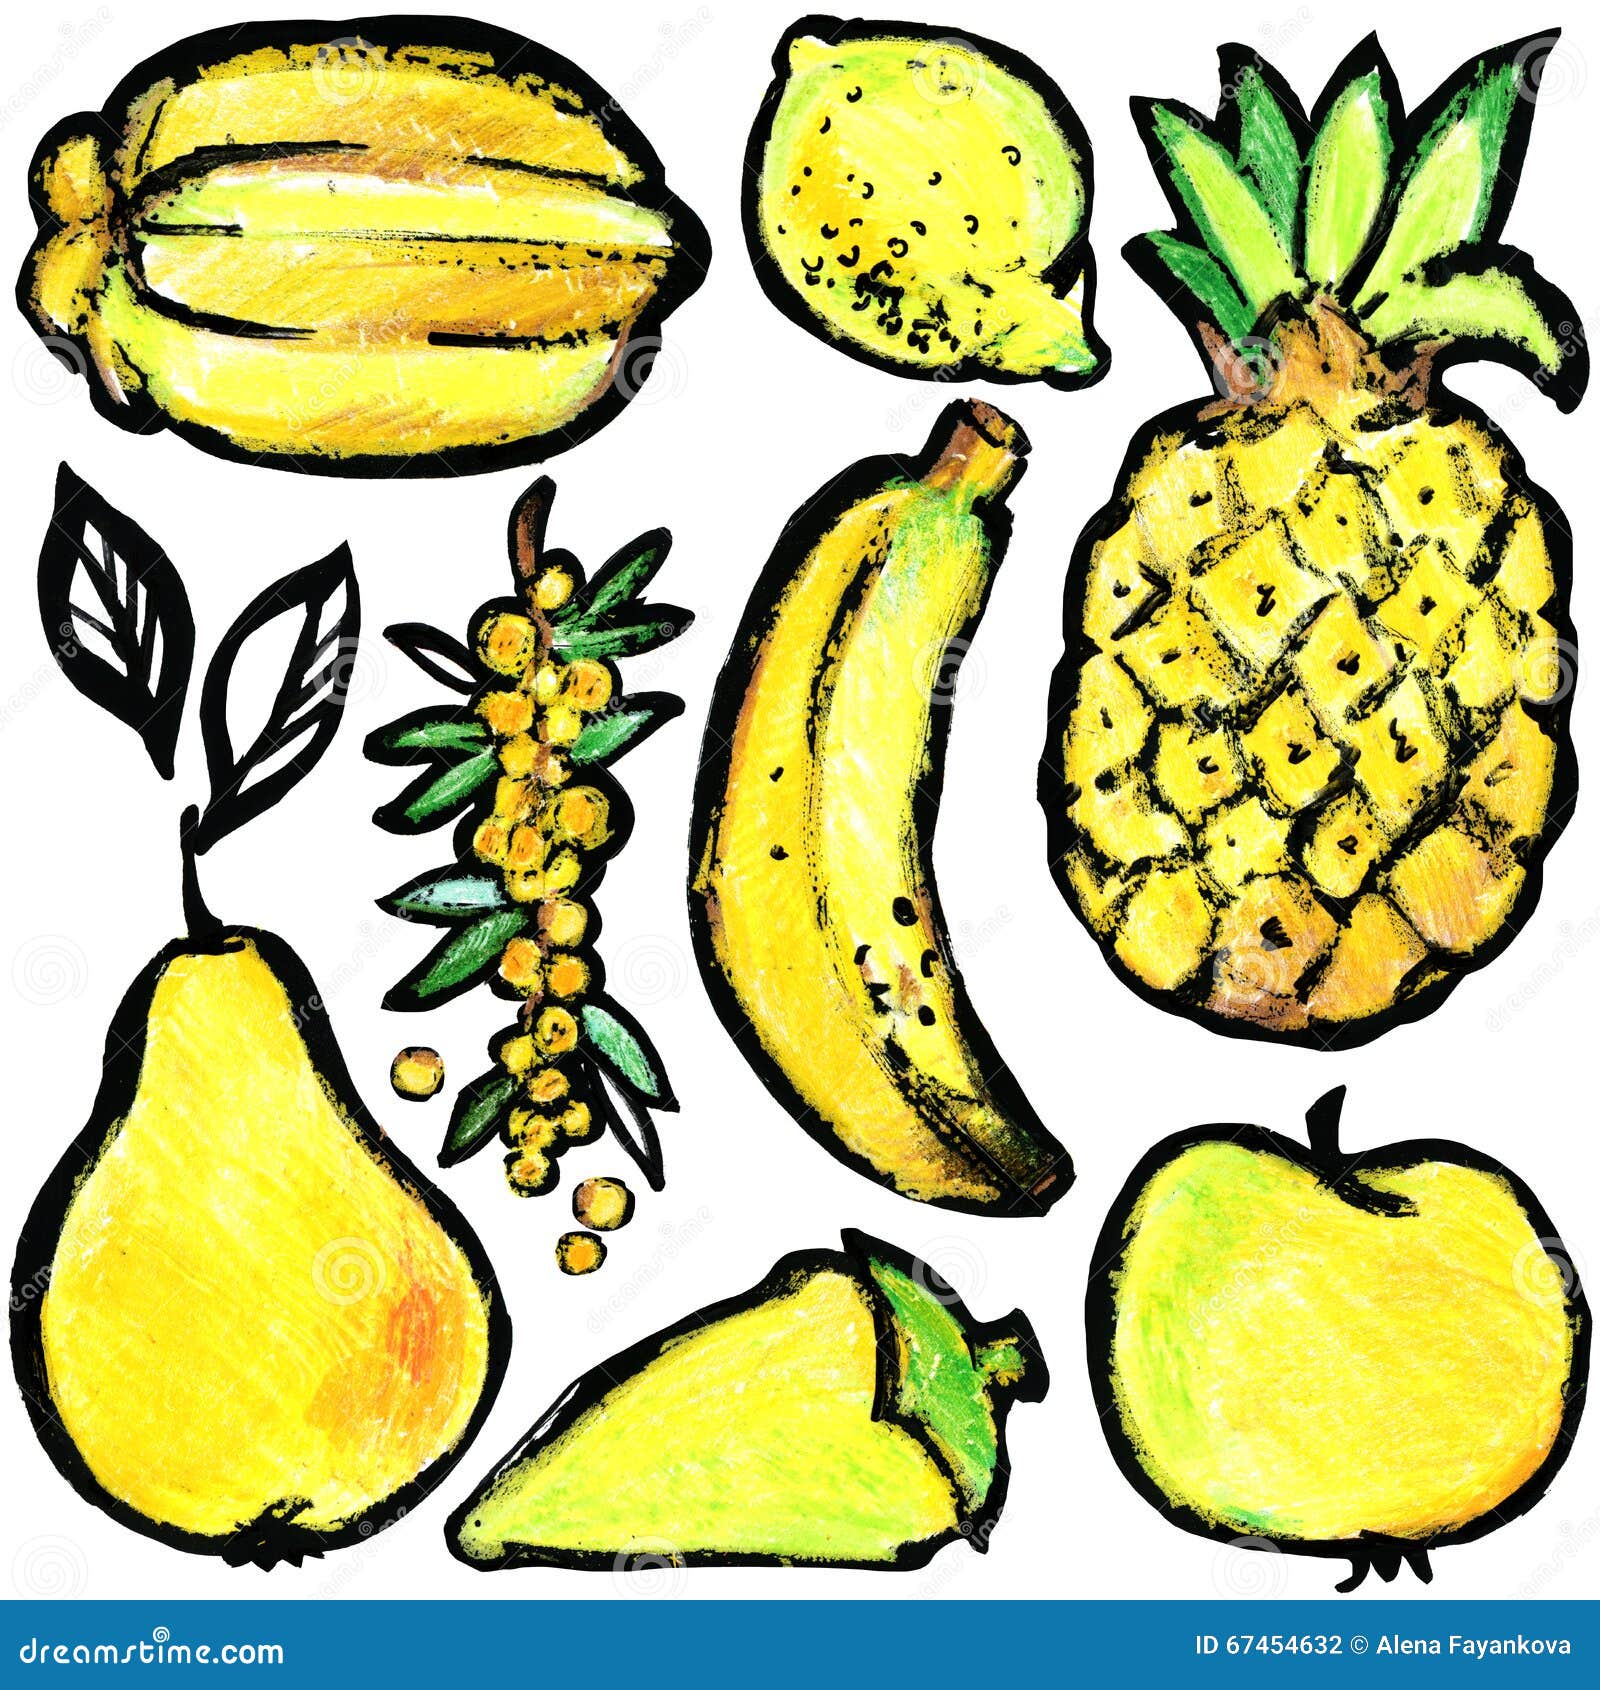 Овощи и фрукты желтого цвета рисунки